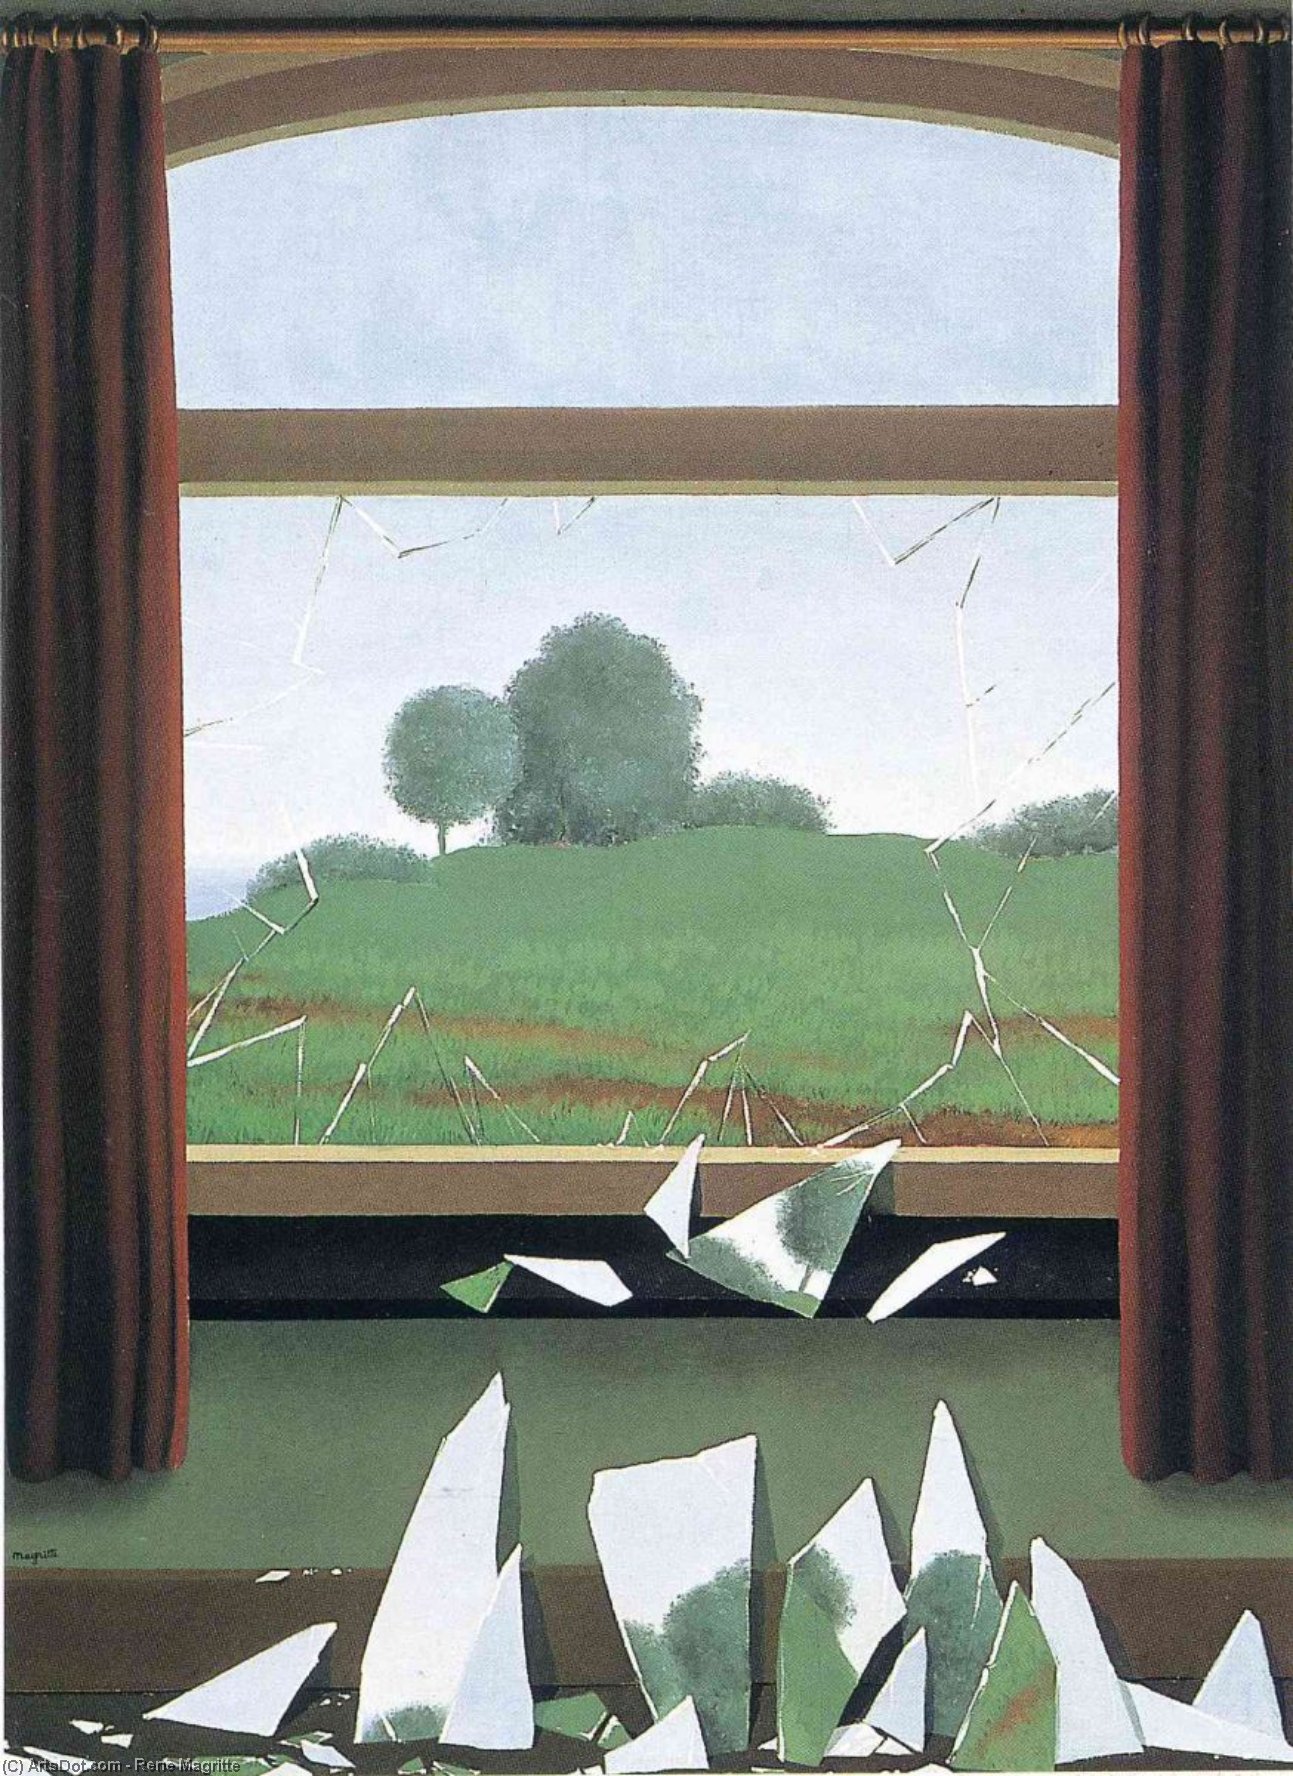 WikiOO.org - אנציקלופדיה לאמנויות יפות - ציור, יצירות אמנות Rene Magritte - The Key to the Fields